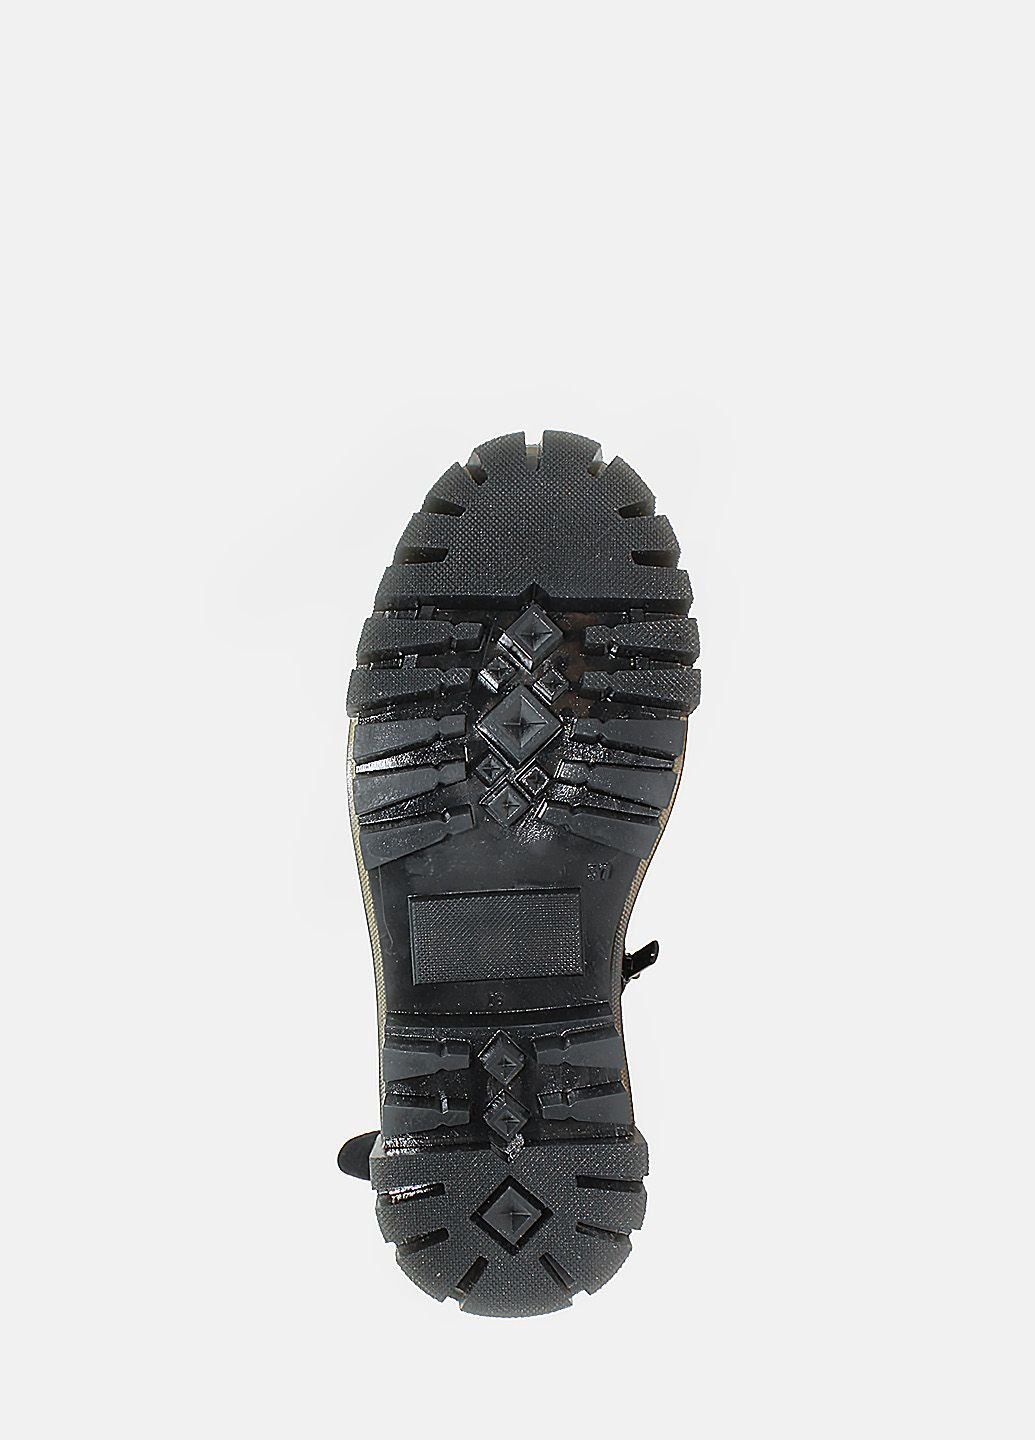 Осенние ботинки rk108-11 черный Kseniya из натуральной замши